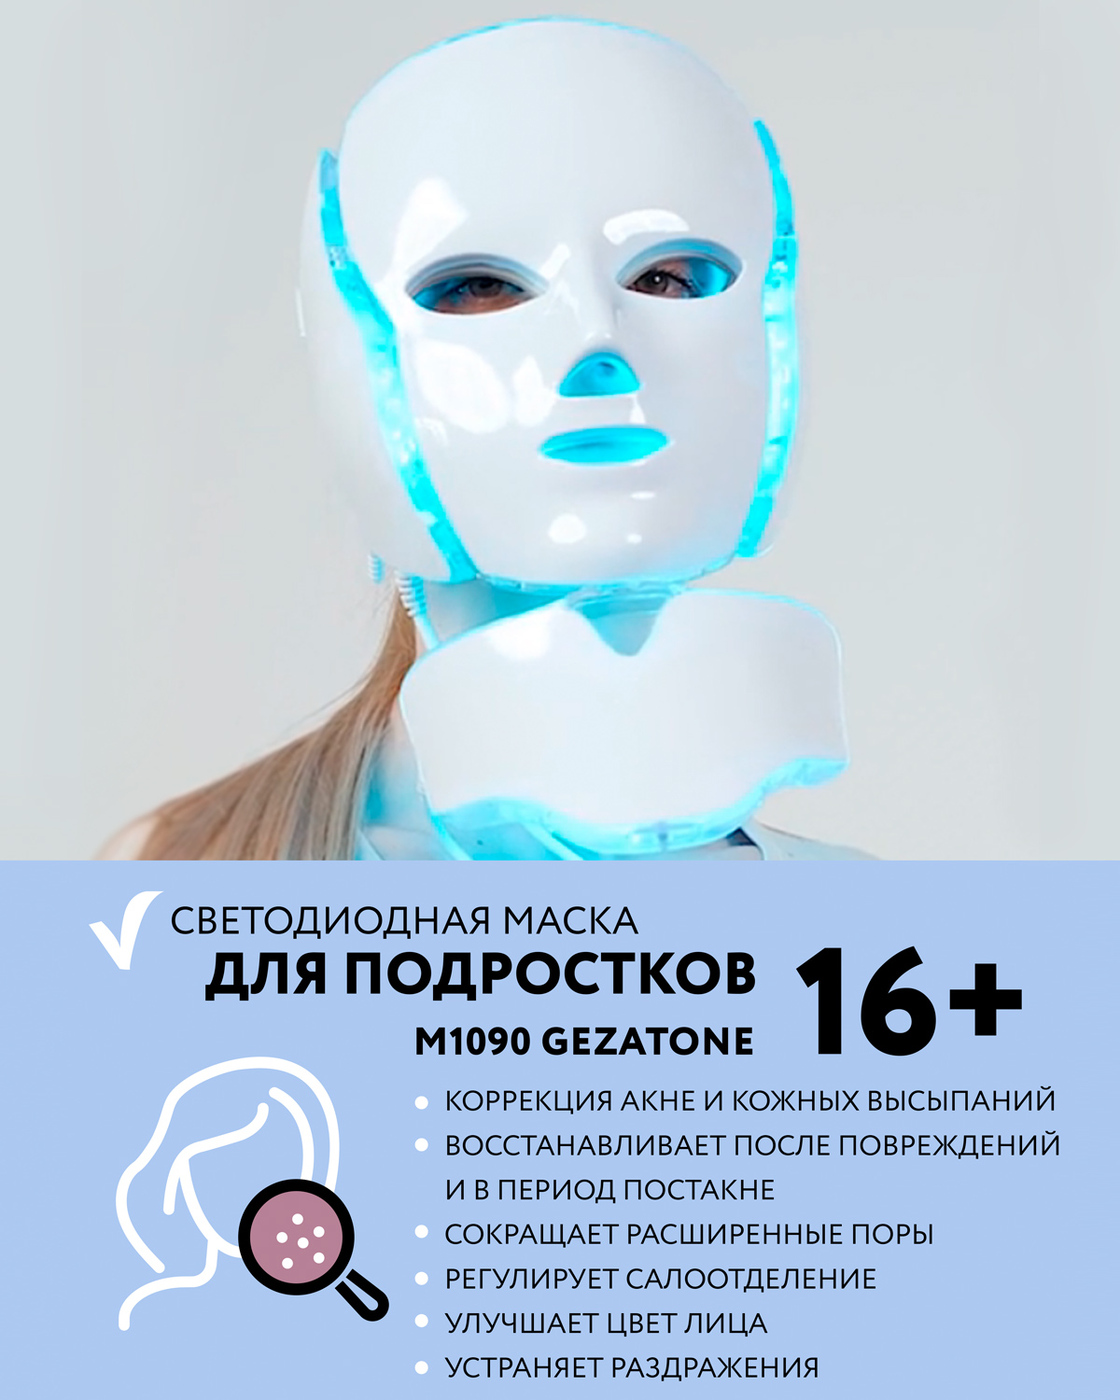 Светодиодная маска Гезатон. Gezatone 1090 светодиодная маска. Gezatone светодиодная маска для омоложения кожи лица m 1090. Хромотерапия для лица. Светодиодная маска gezatone